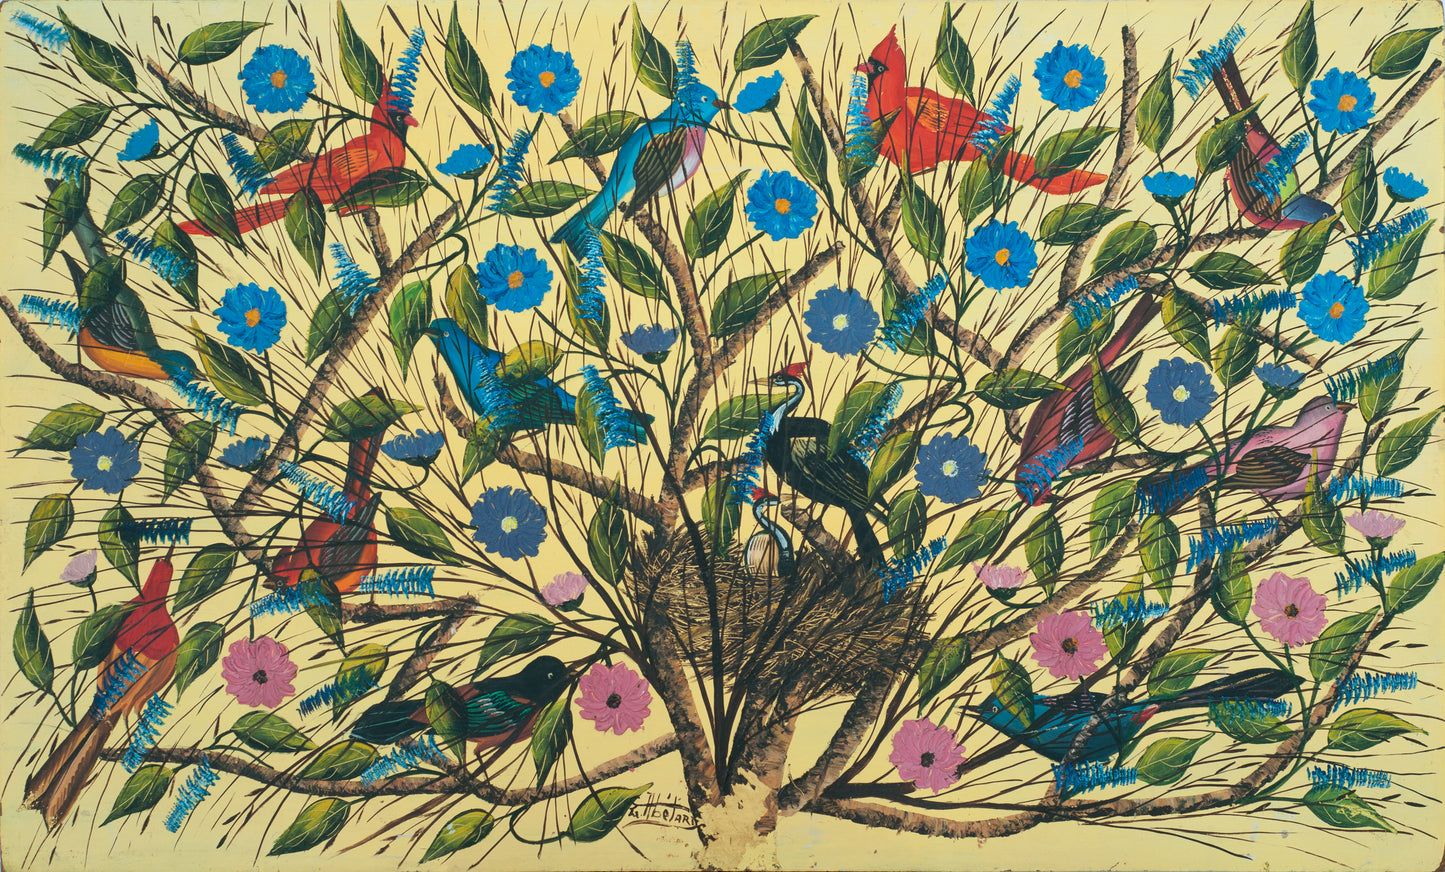 Gesner Abélard (Haïtien, 1922-DCD) 24"x40" Oiseaux et nids c1981 Huile sur carton Peinture non encadrée #14-3-96GSN-Fondation Marie &amp; Georges S. Nader